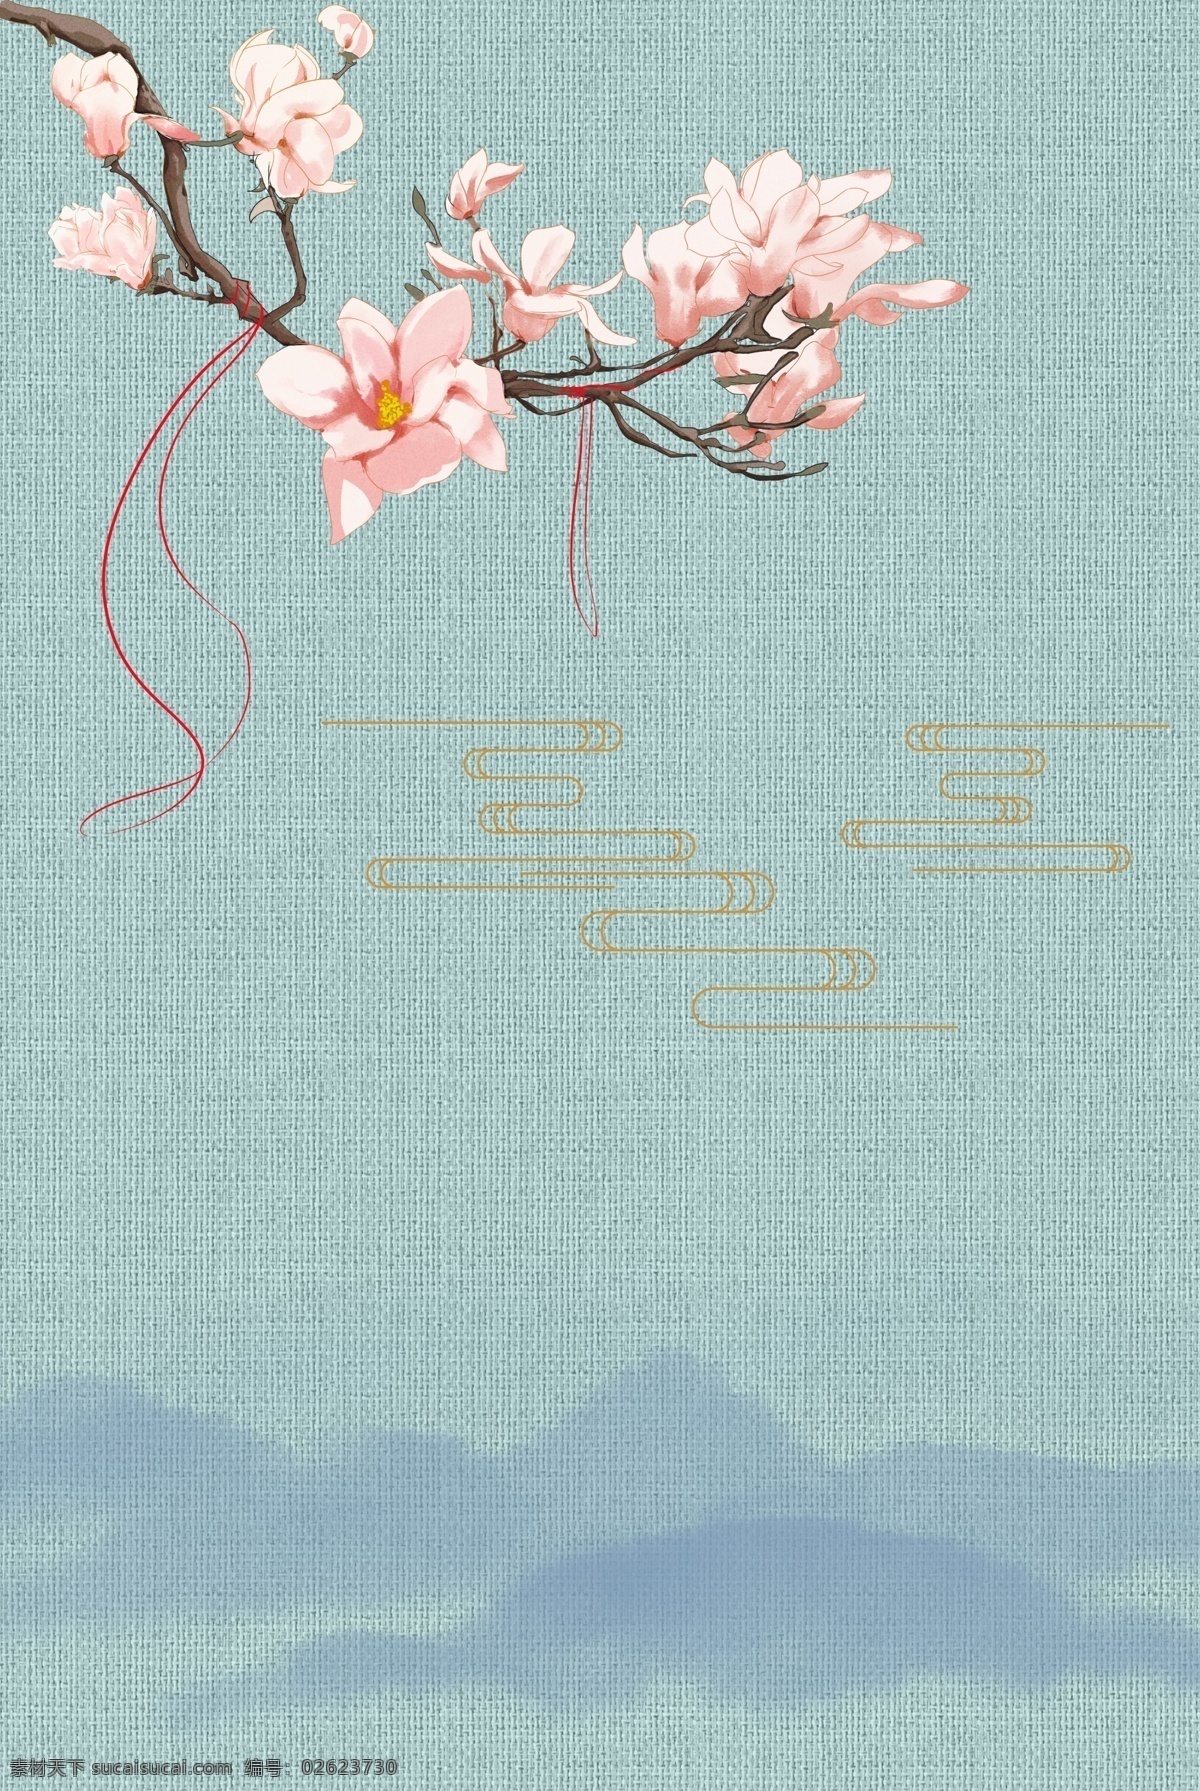 中式 工笔画 古典 中国 风 背景 花朵 花卉 海报背景模板 传统海报 古风 手绘 中式海报背景